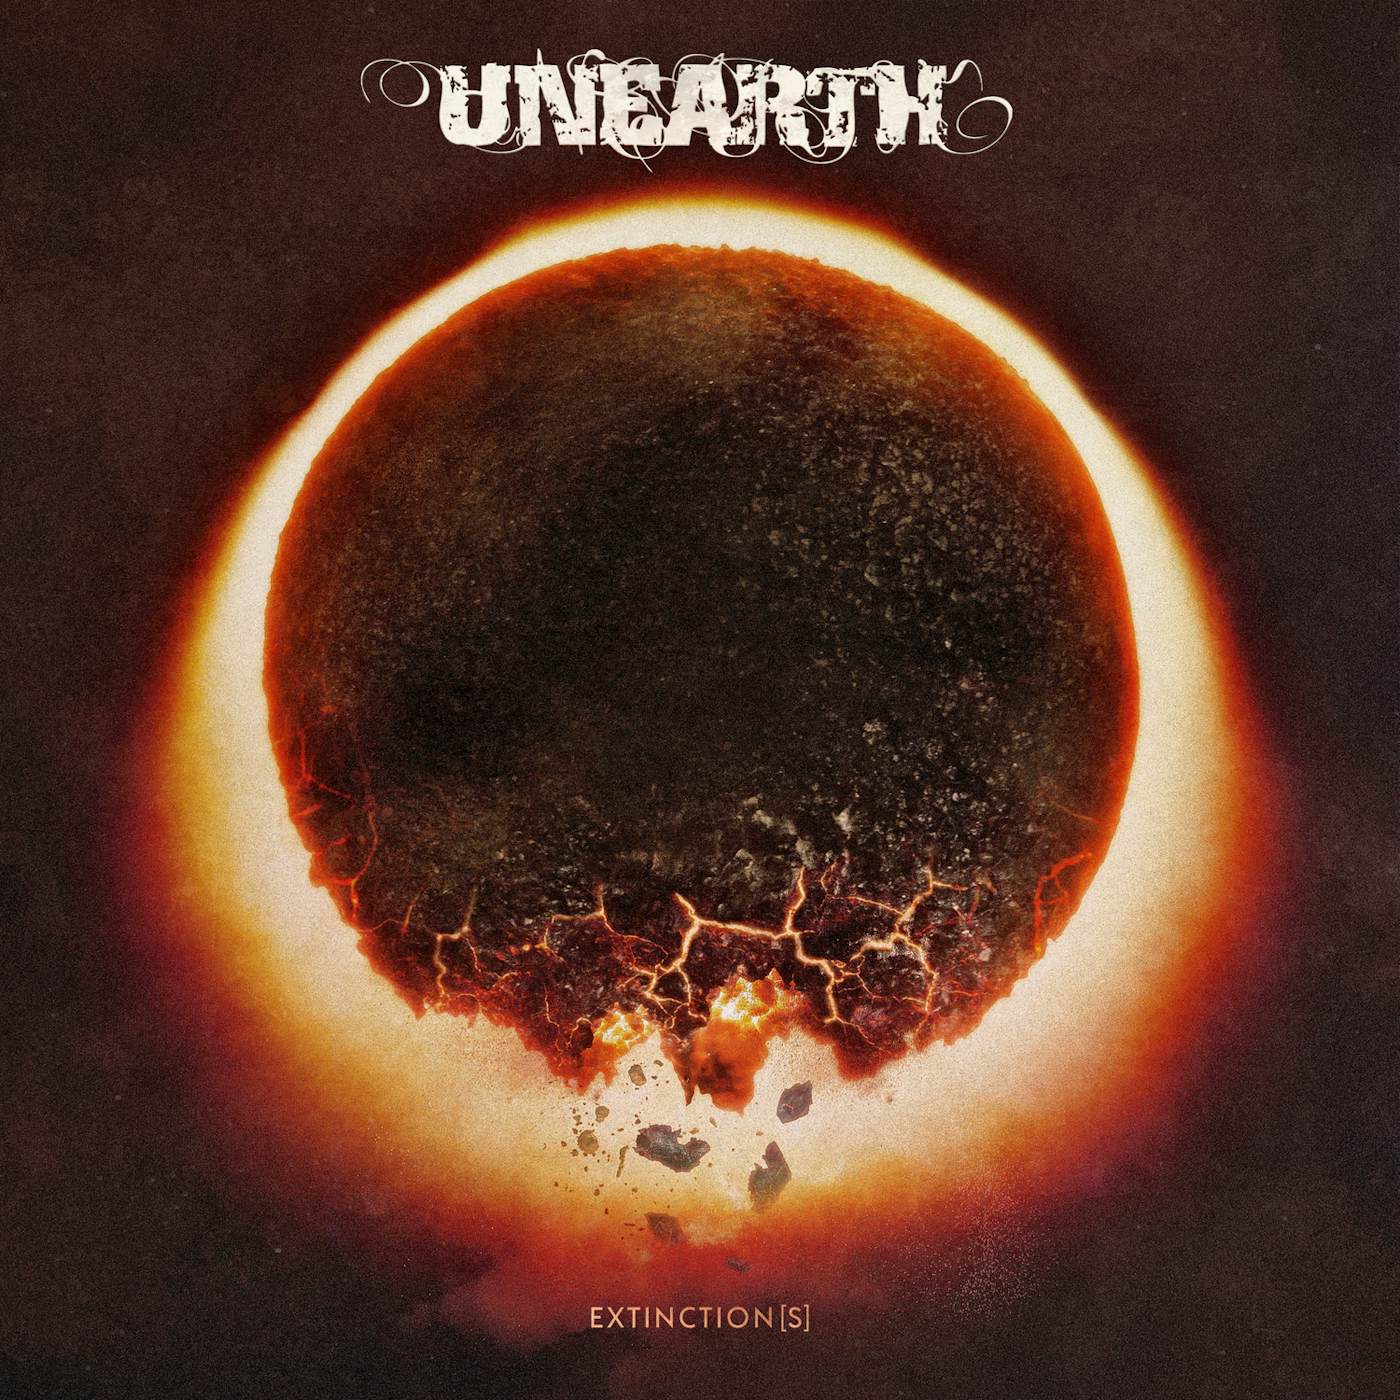 Unearth Extinction(s) Vinyl Record